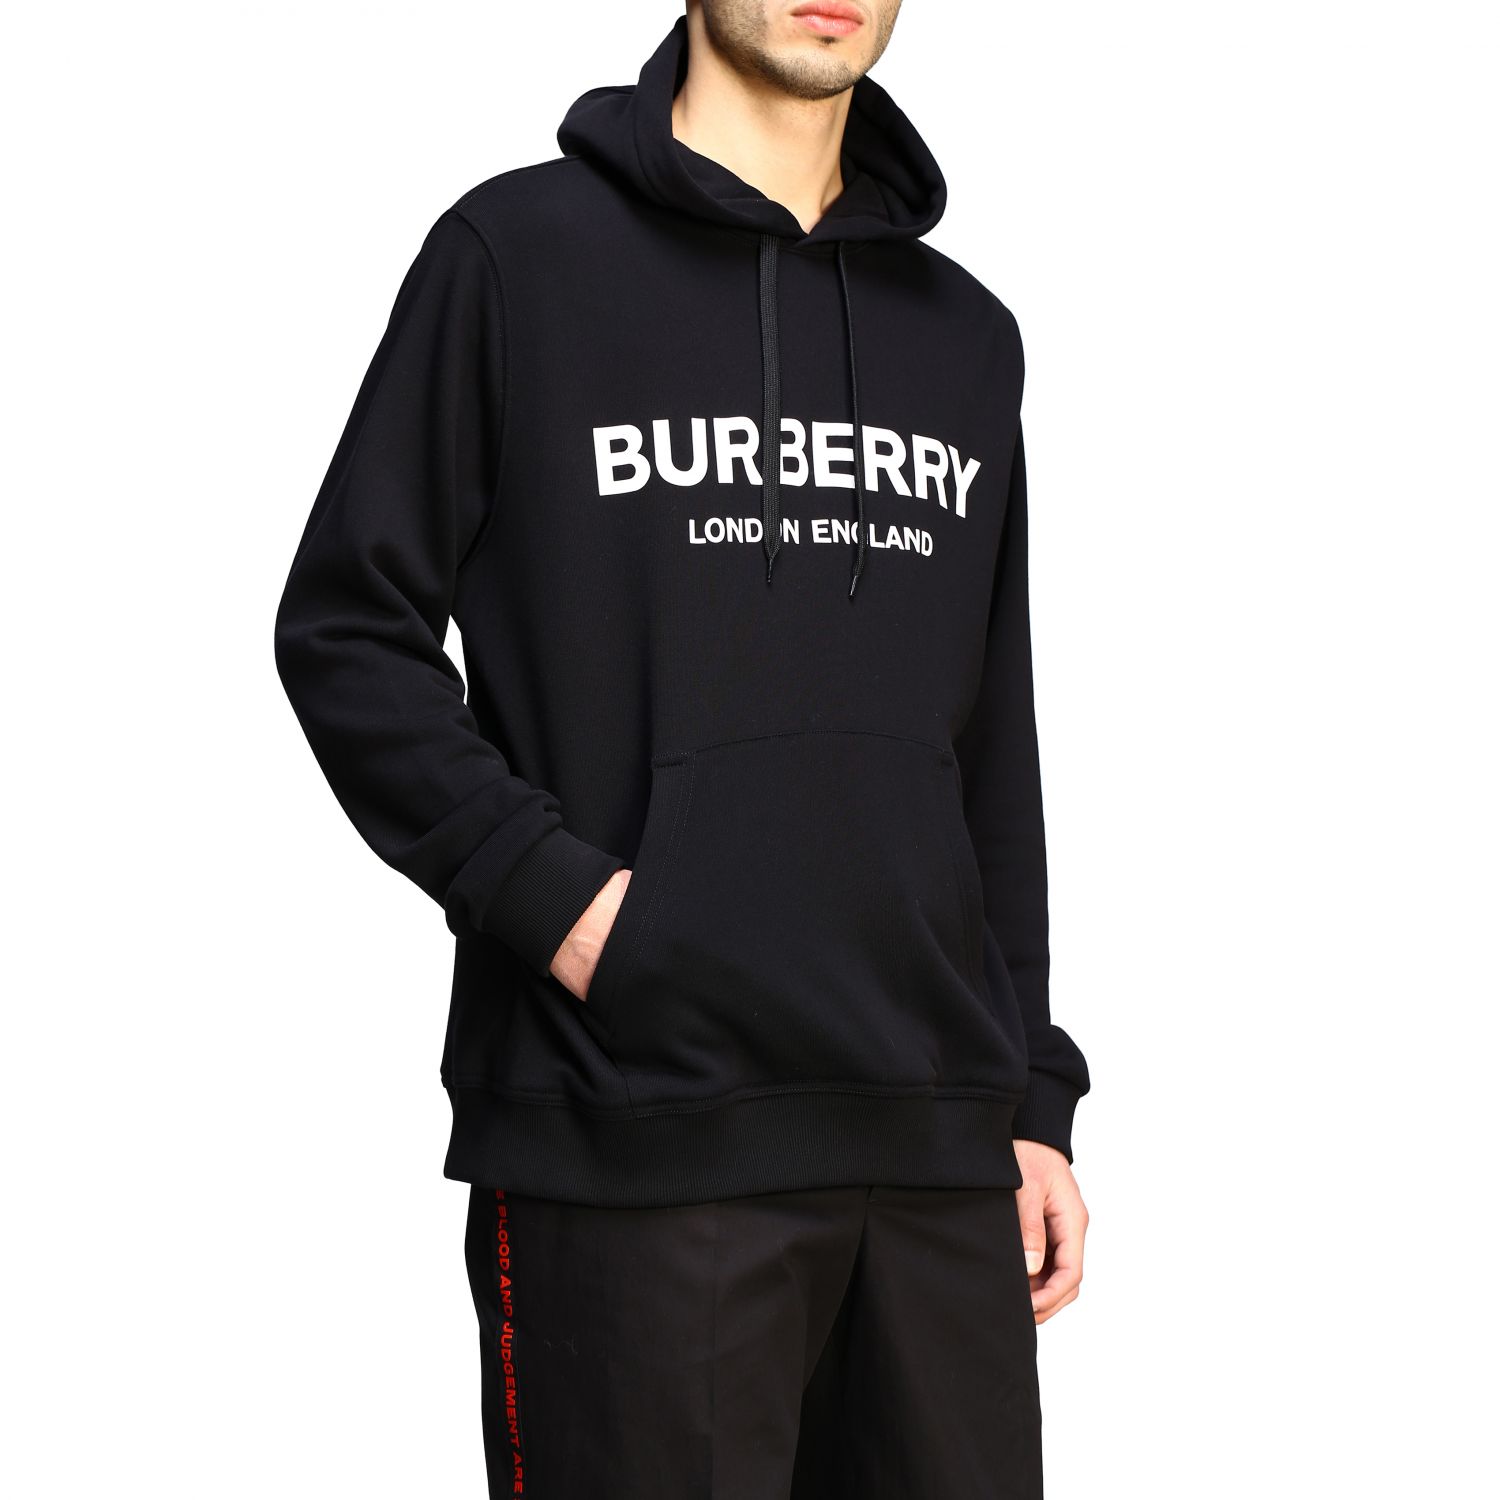 Burberry hooded sweatshirt with logo 